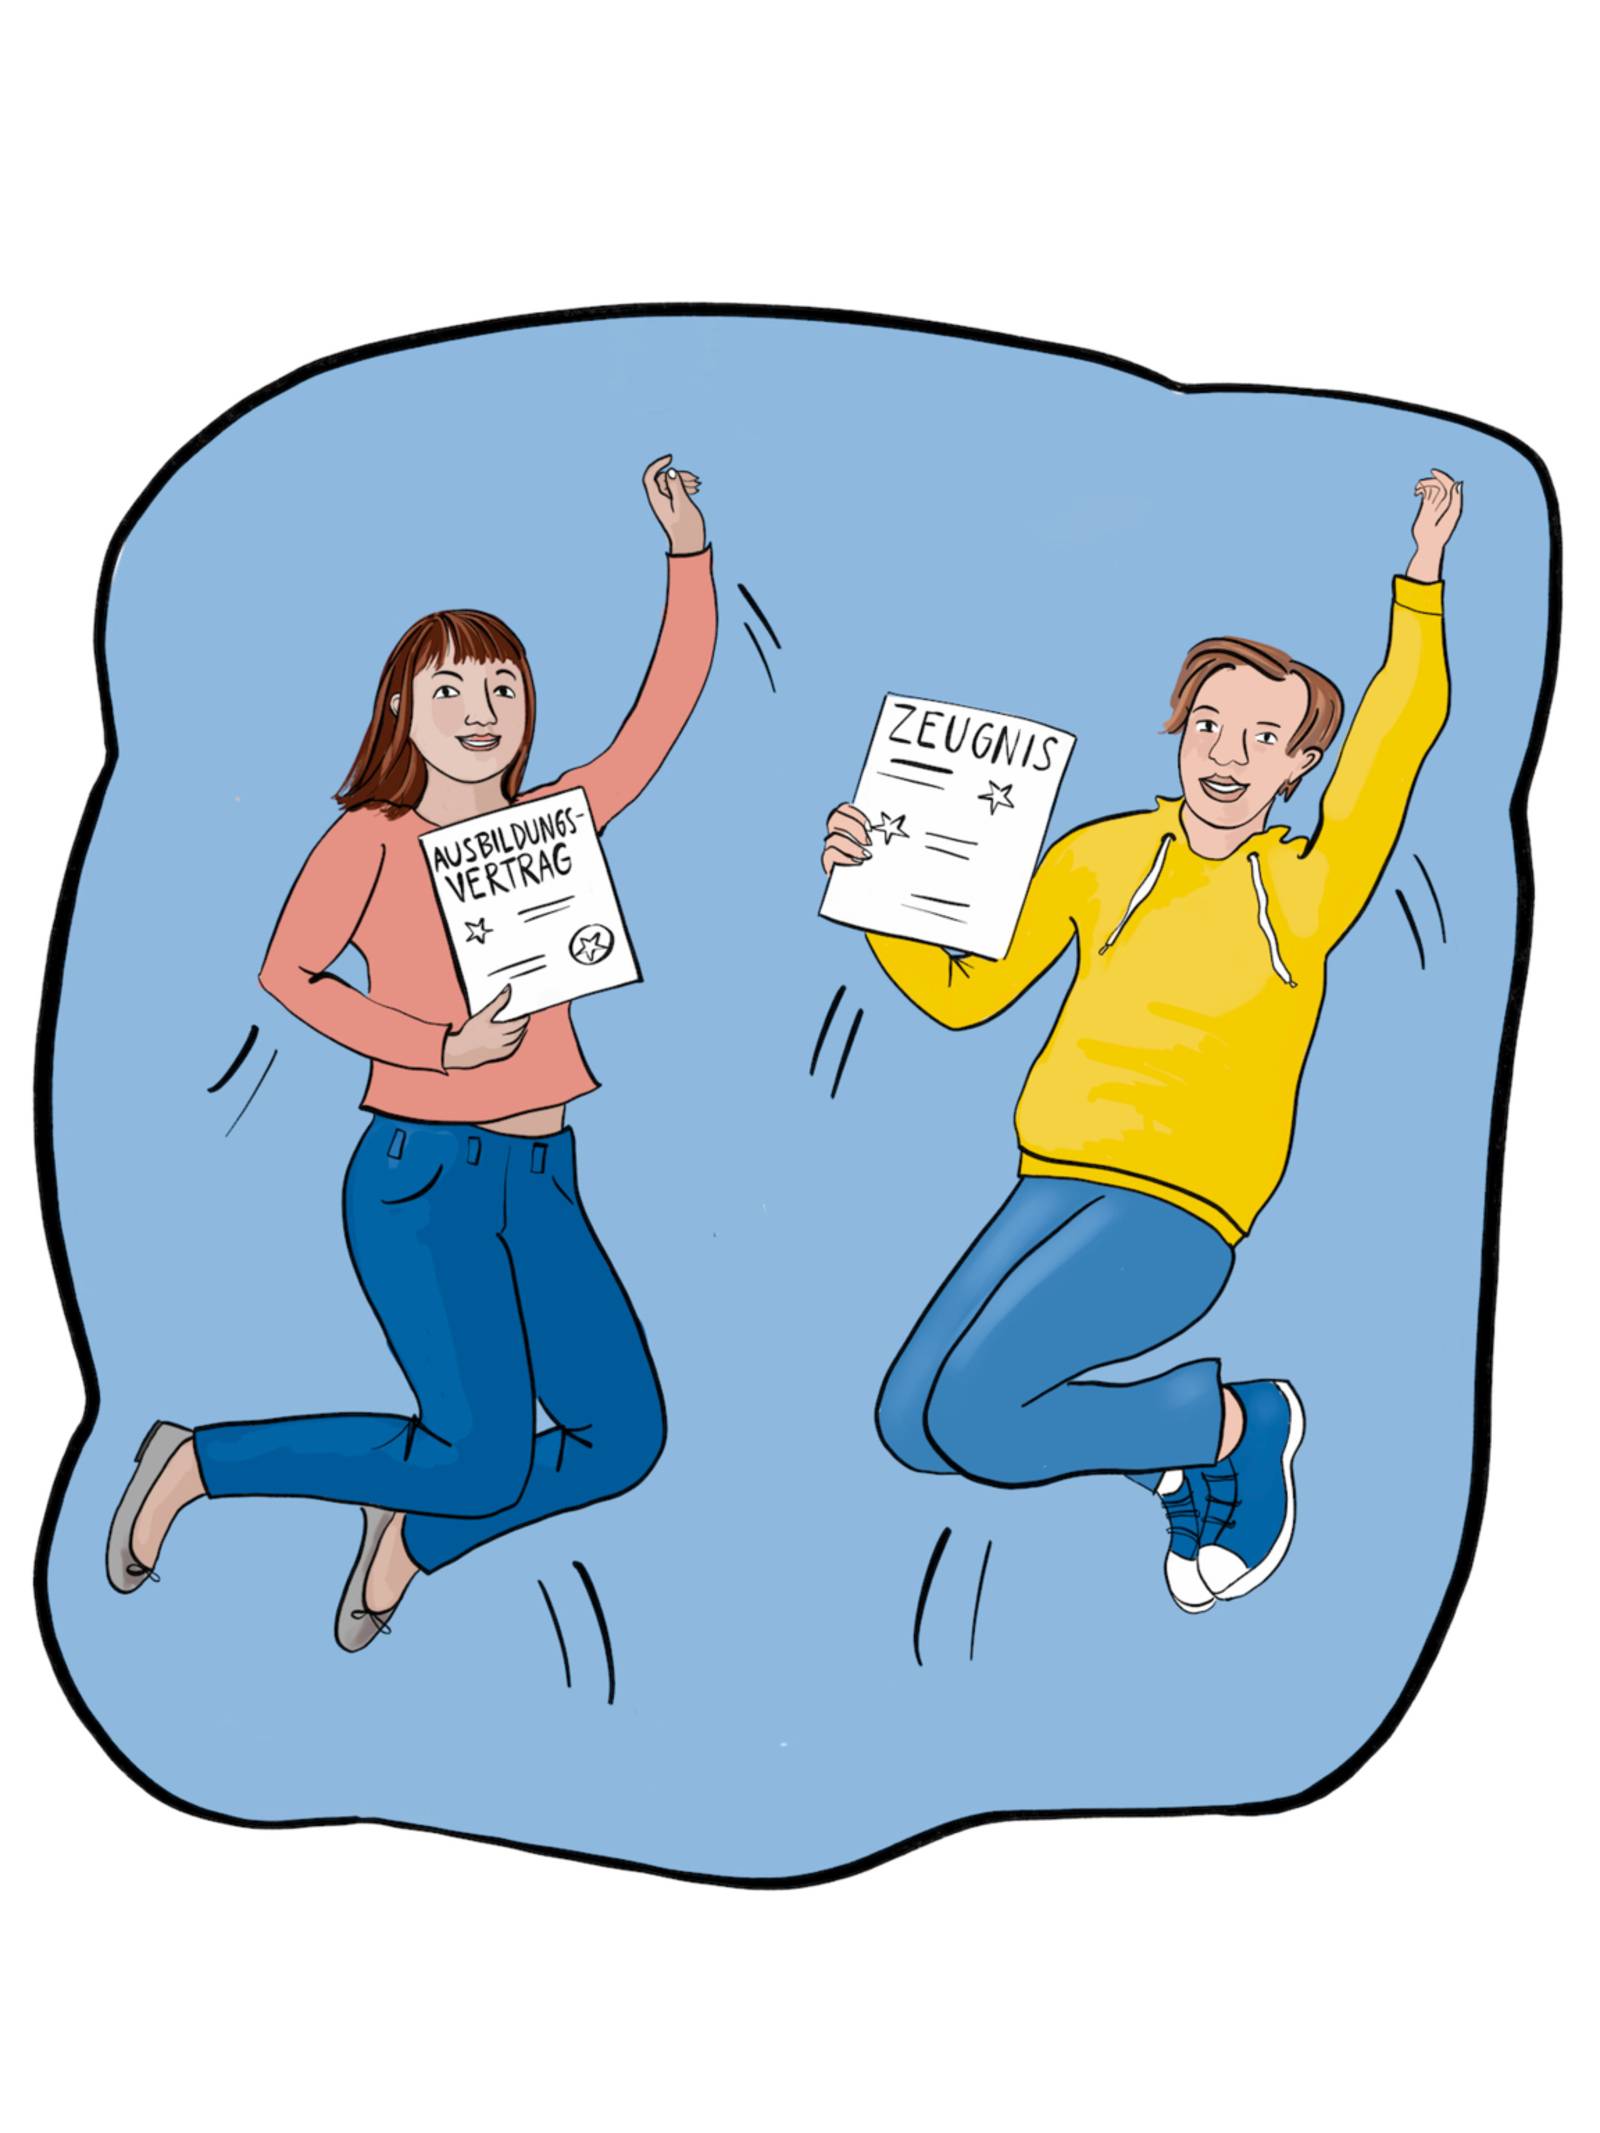 Zeichnung: zwei junge Menschen springen in die Luft und recken jeweils den linken Arm in die Luft. Das Mädchen hält in der rechten Hand ein Dokument mit der Aufschrift "Ausbildungsvertrag" und der Junge hält in der rechten Hand ein Dokument mit der Überschrift "Zeugnis". Beide lächeln.